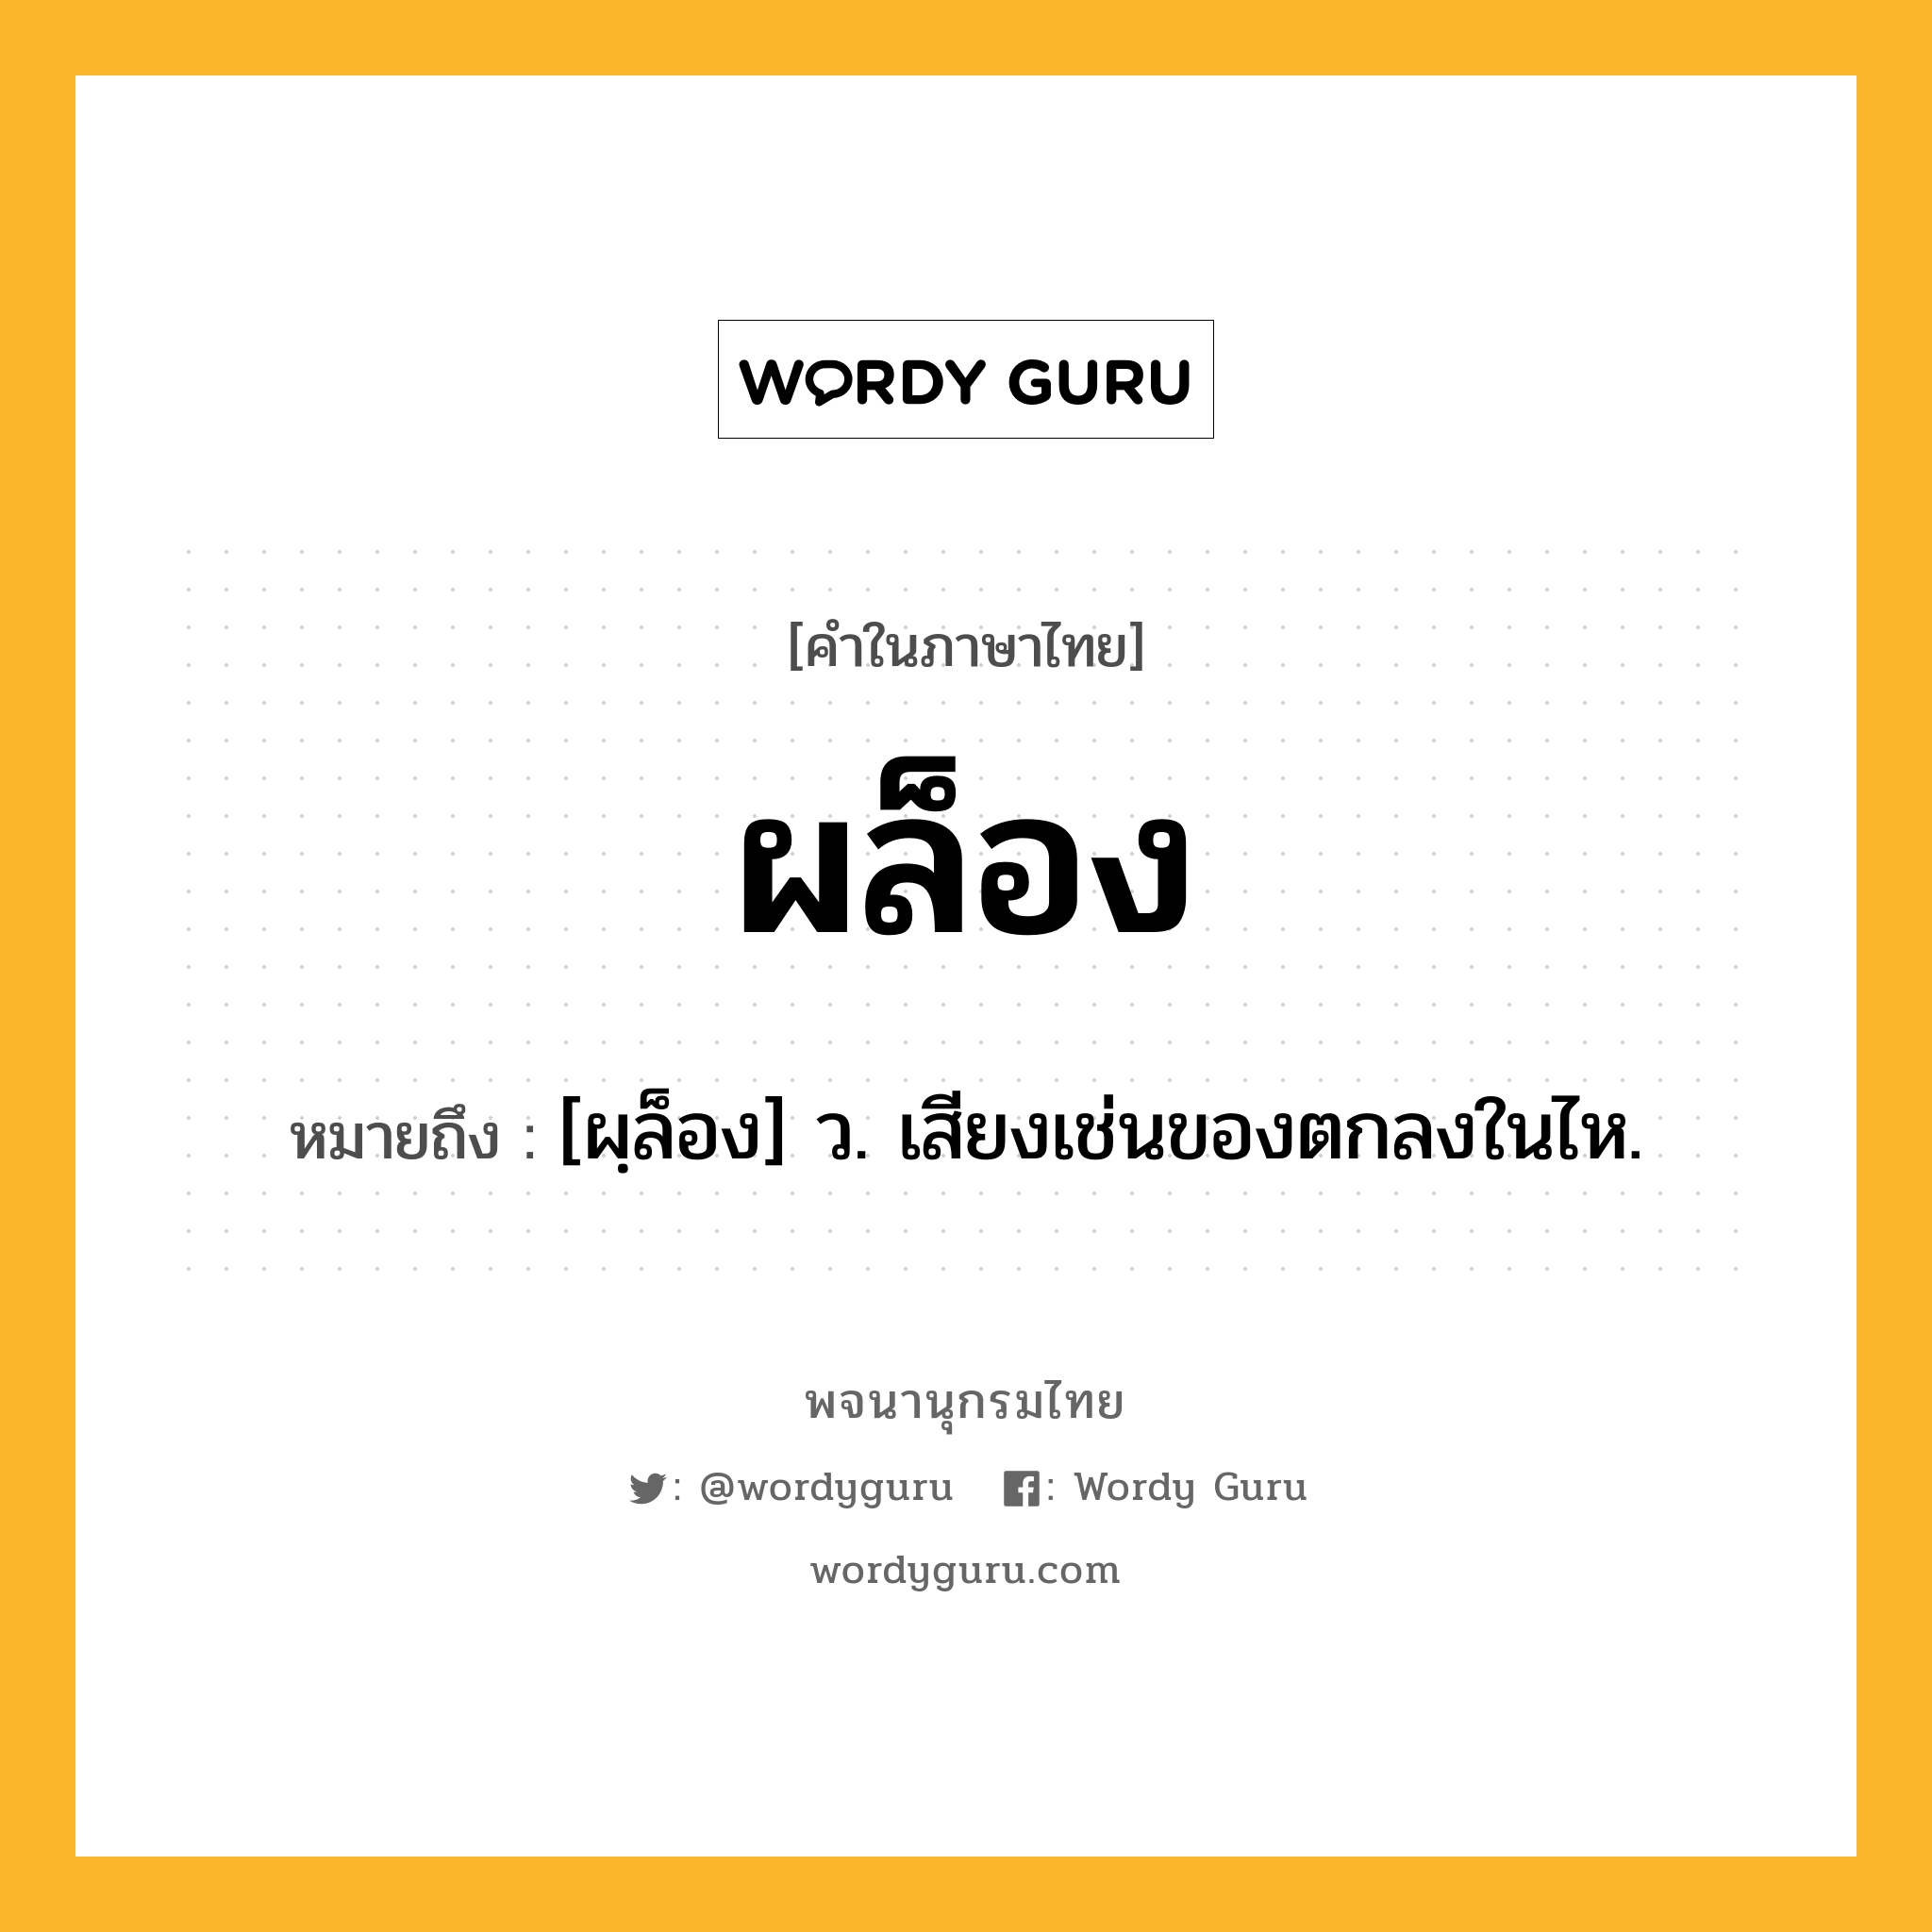 ผล็อง หมายถึงอะไร?, คำในภาษาไทย ผล็อง หมายถึง [ผฺล็อง] ว. เสียงเช่นของตกลงในไห.